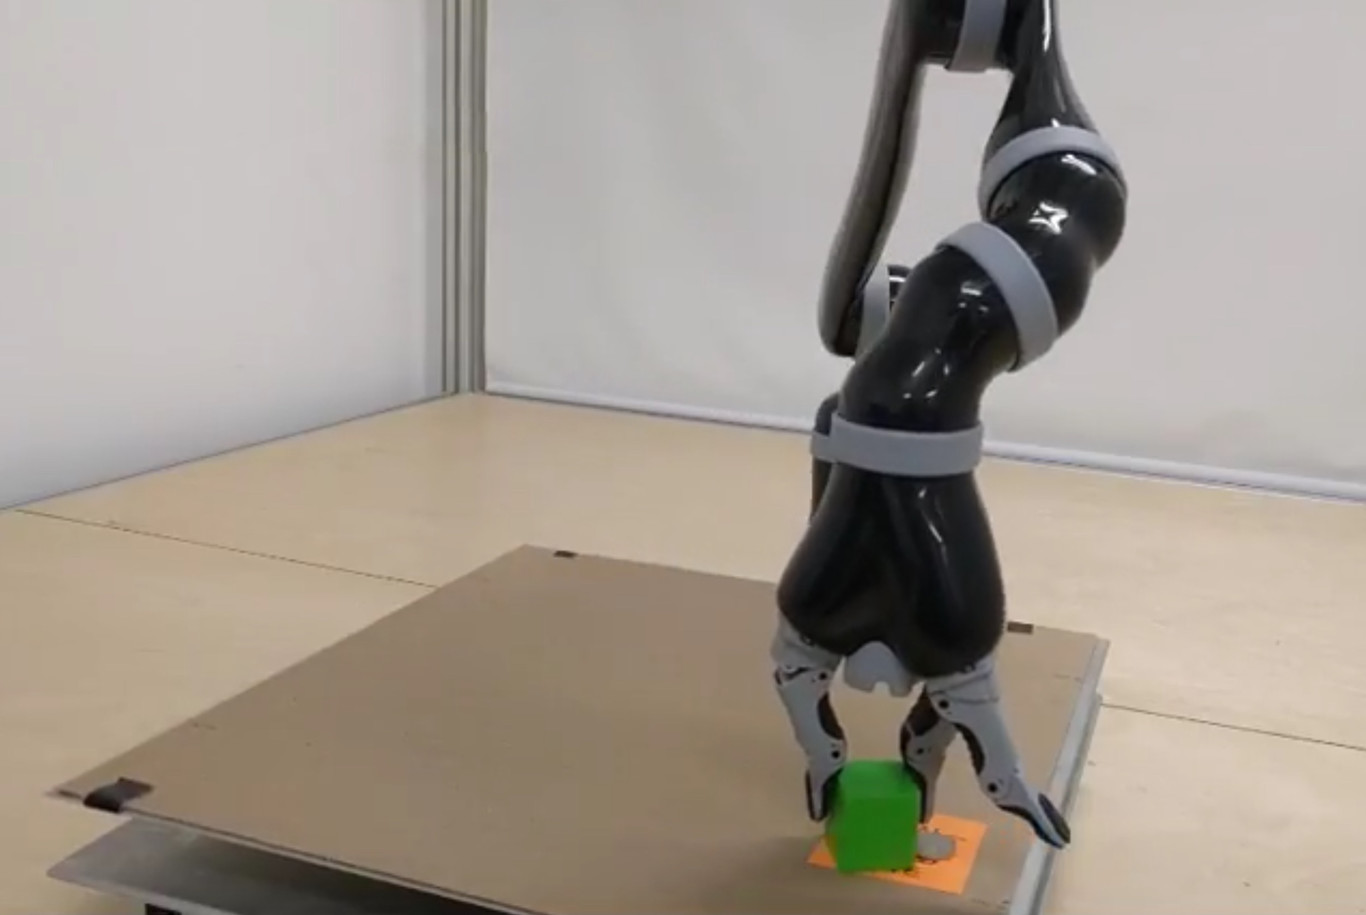 Este robot de DeepMind sólo ha recibido una tarea, ha aprendido por sí mismo a moverse y completarla